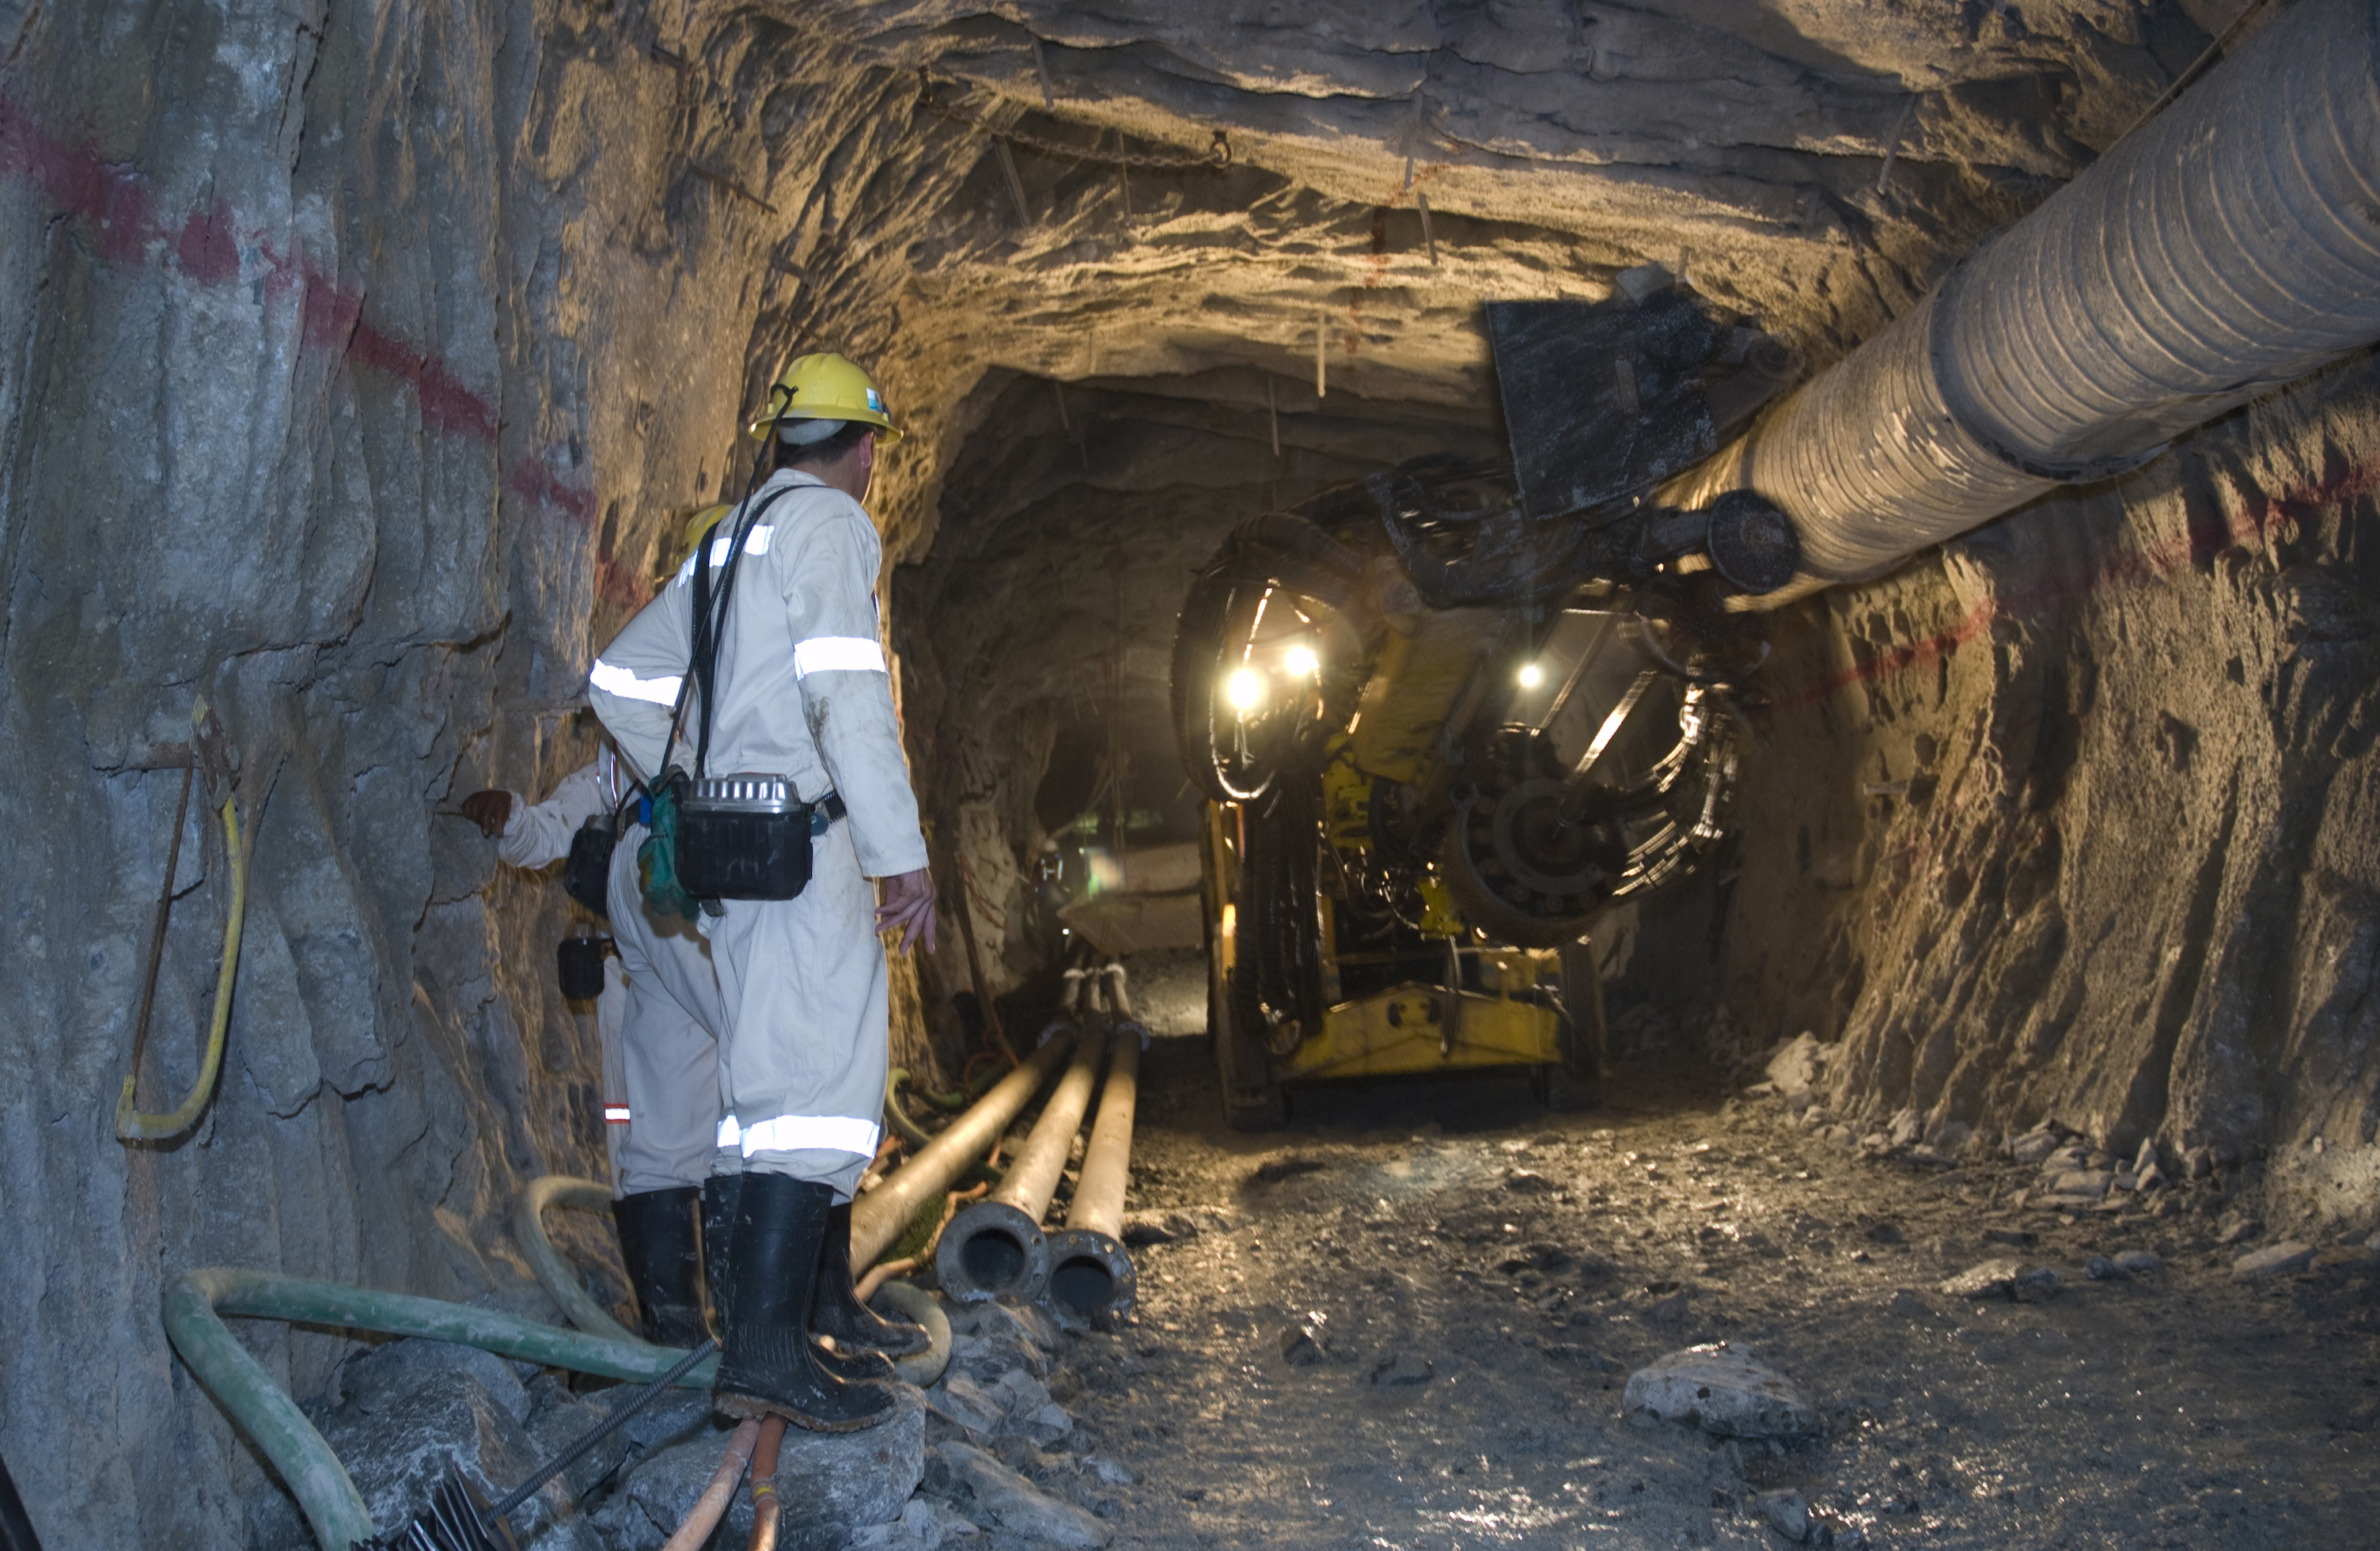 Homem parado no canto esquerdo da imagem, com roupa cinza com material refletor. Máquina utilizada para perfurar rochas no canto direito. Tudo em uma mina subterrânea.